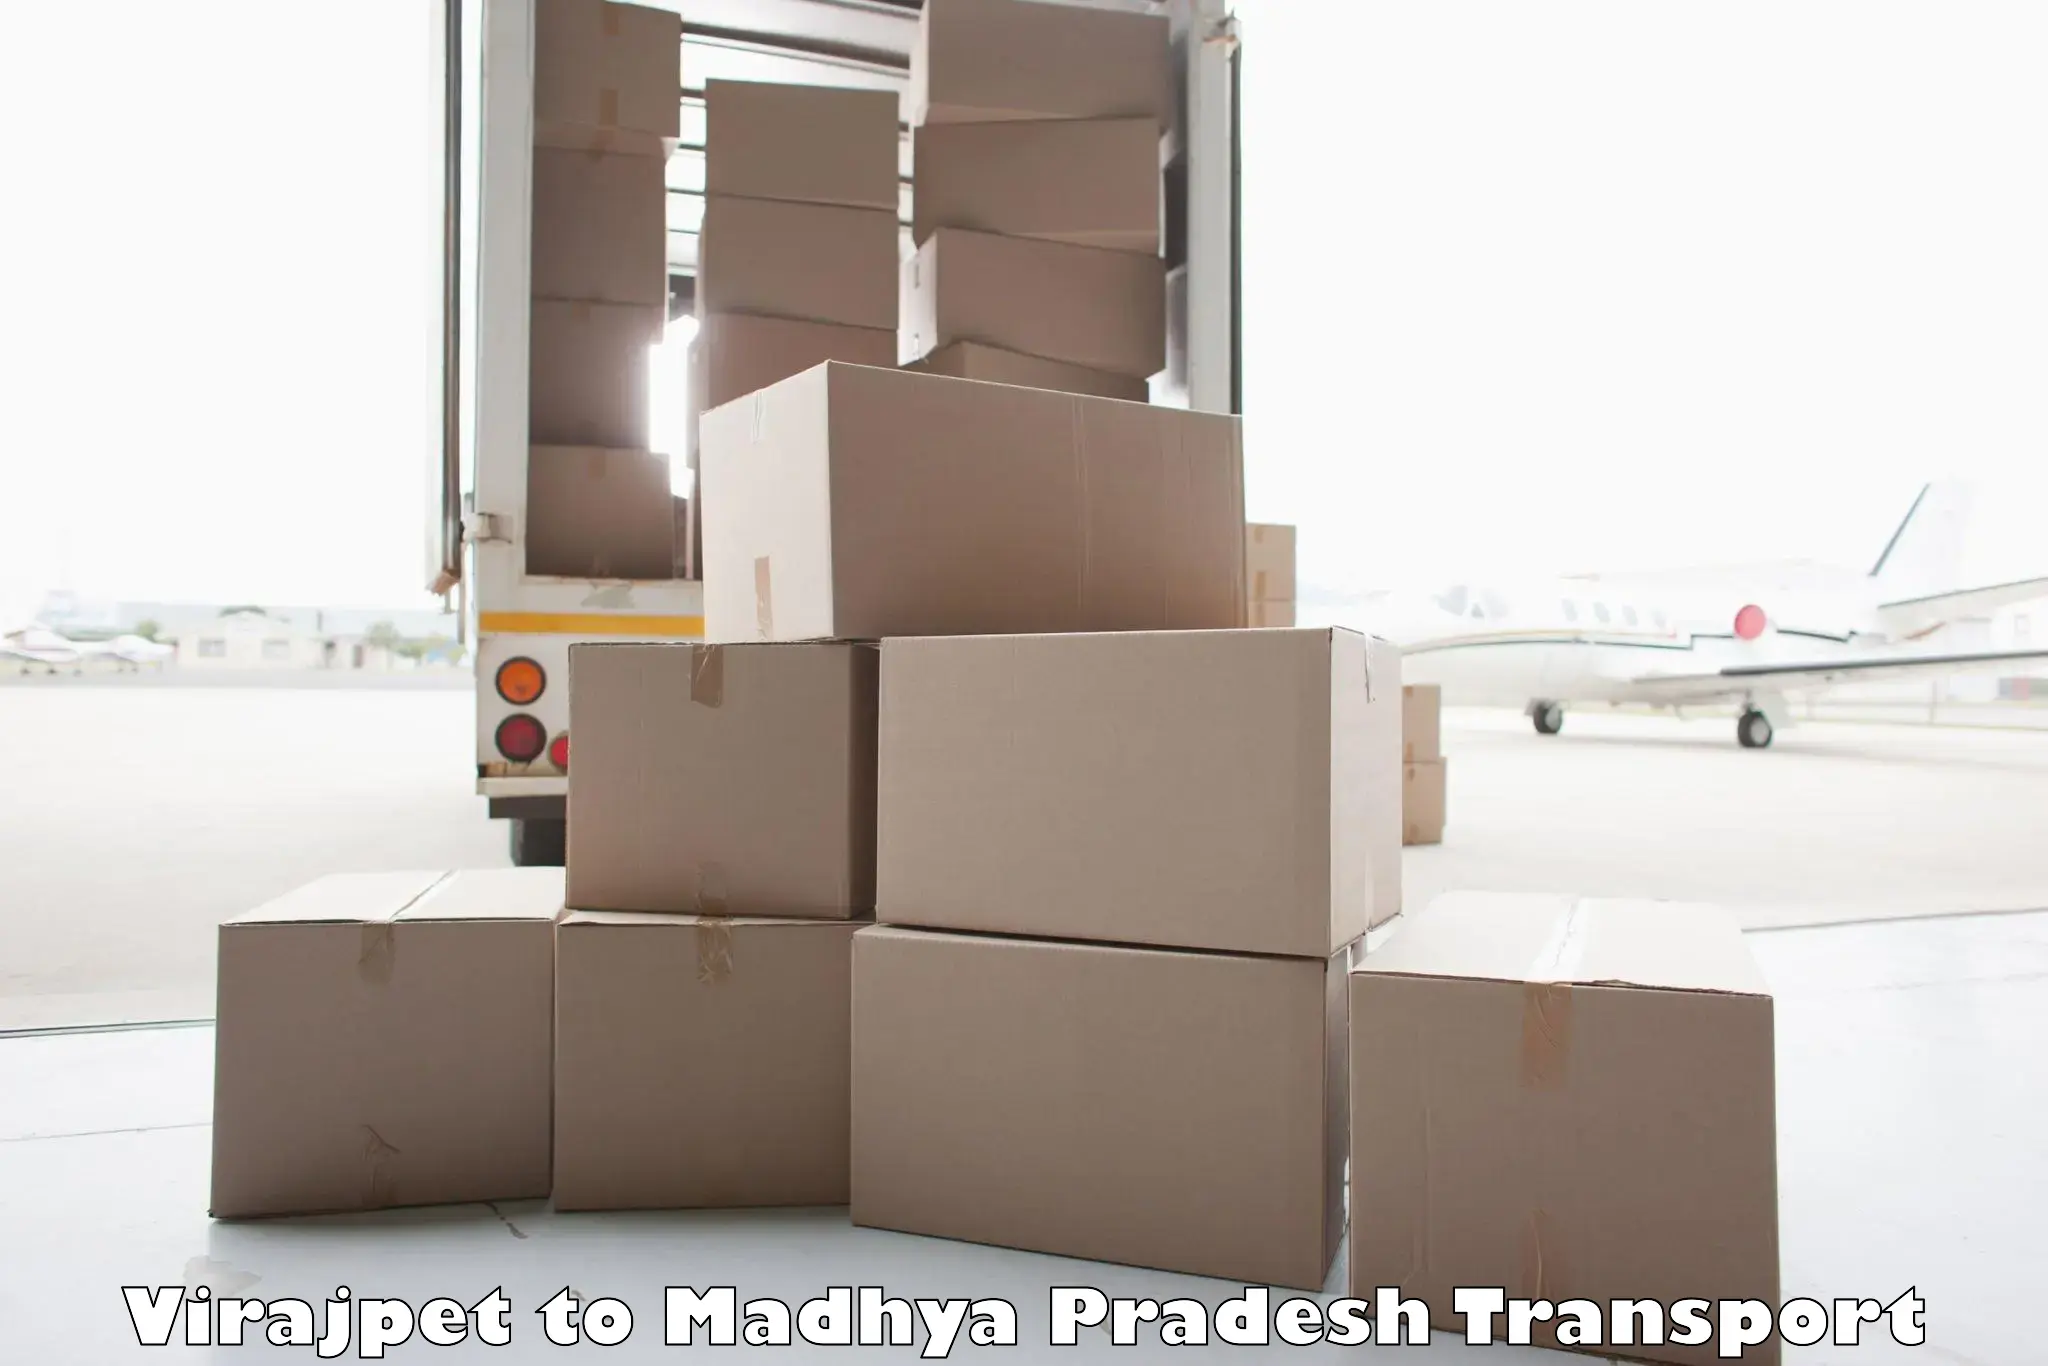 Container transport service Virajpet to Madhya Pradesh